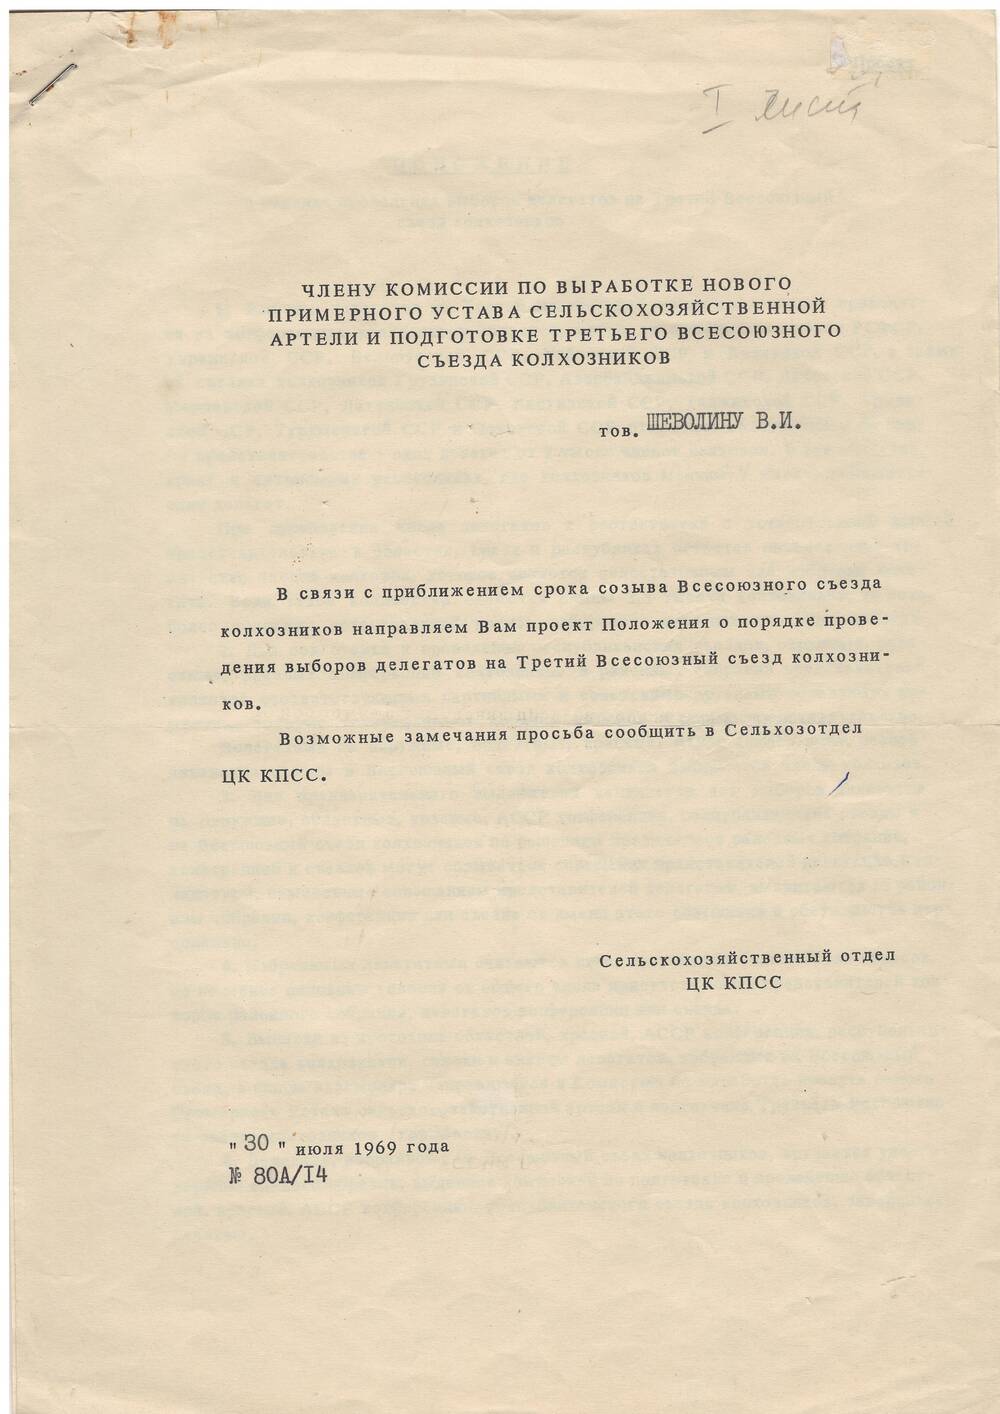 Фрагмент. Проект положения о порядке проведения выборов 1969 год